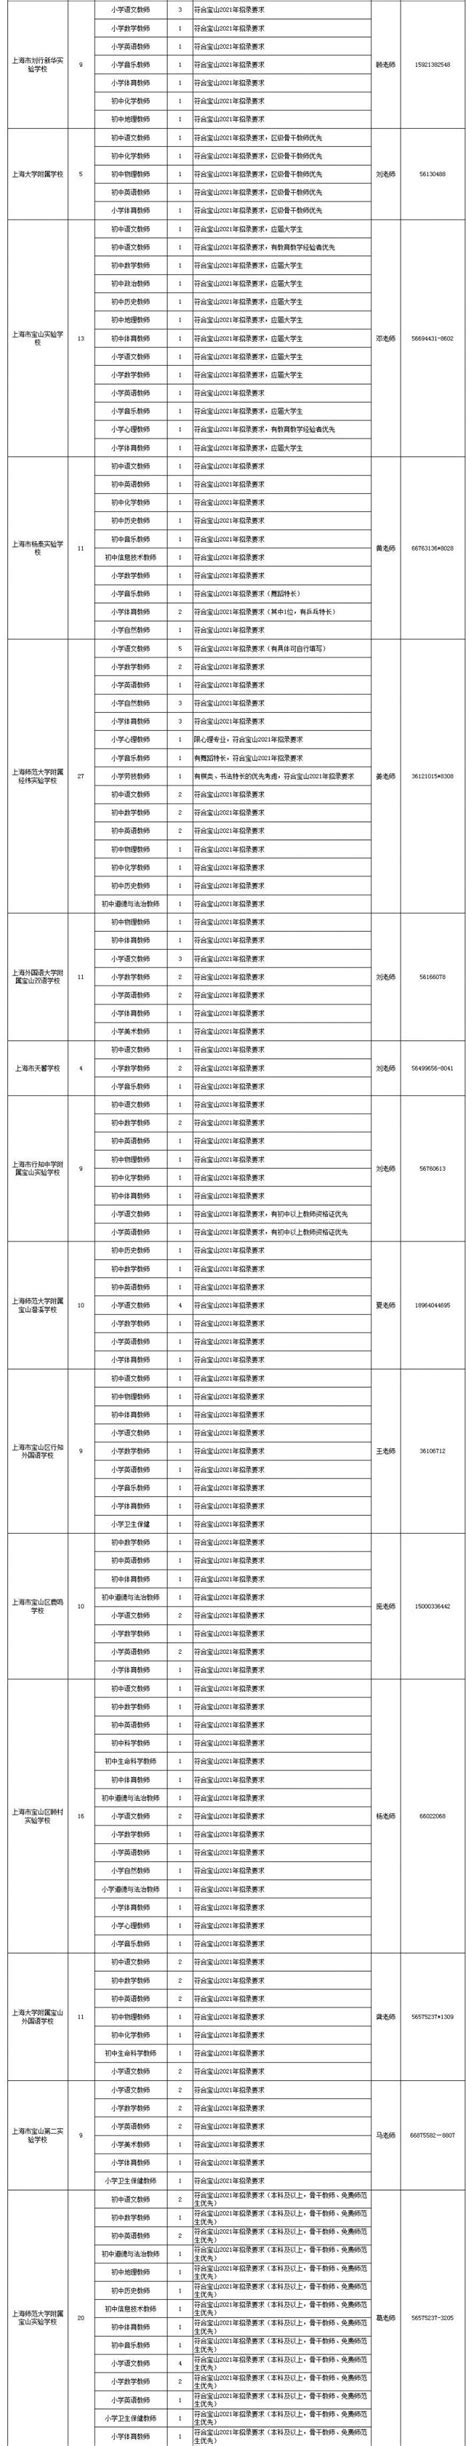 2021年上海宝山区教师招聘第一期(报名时间及入口)- 上海本地宝